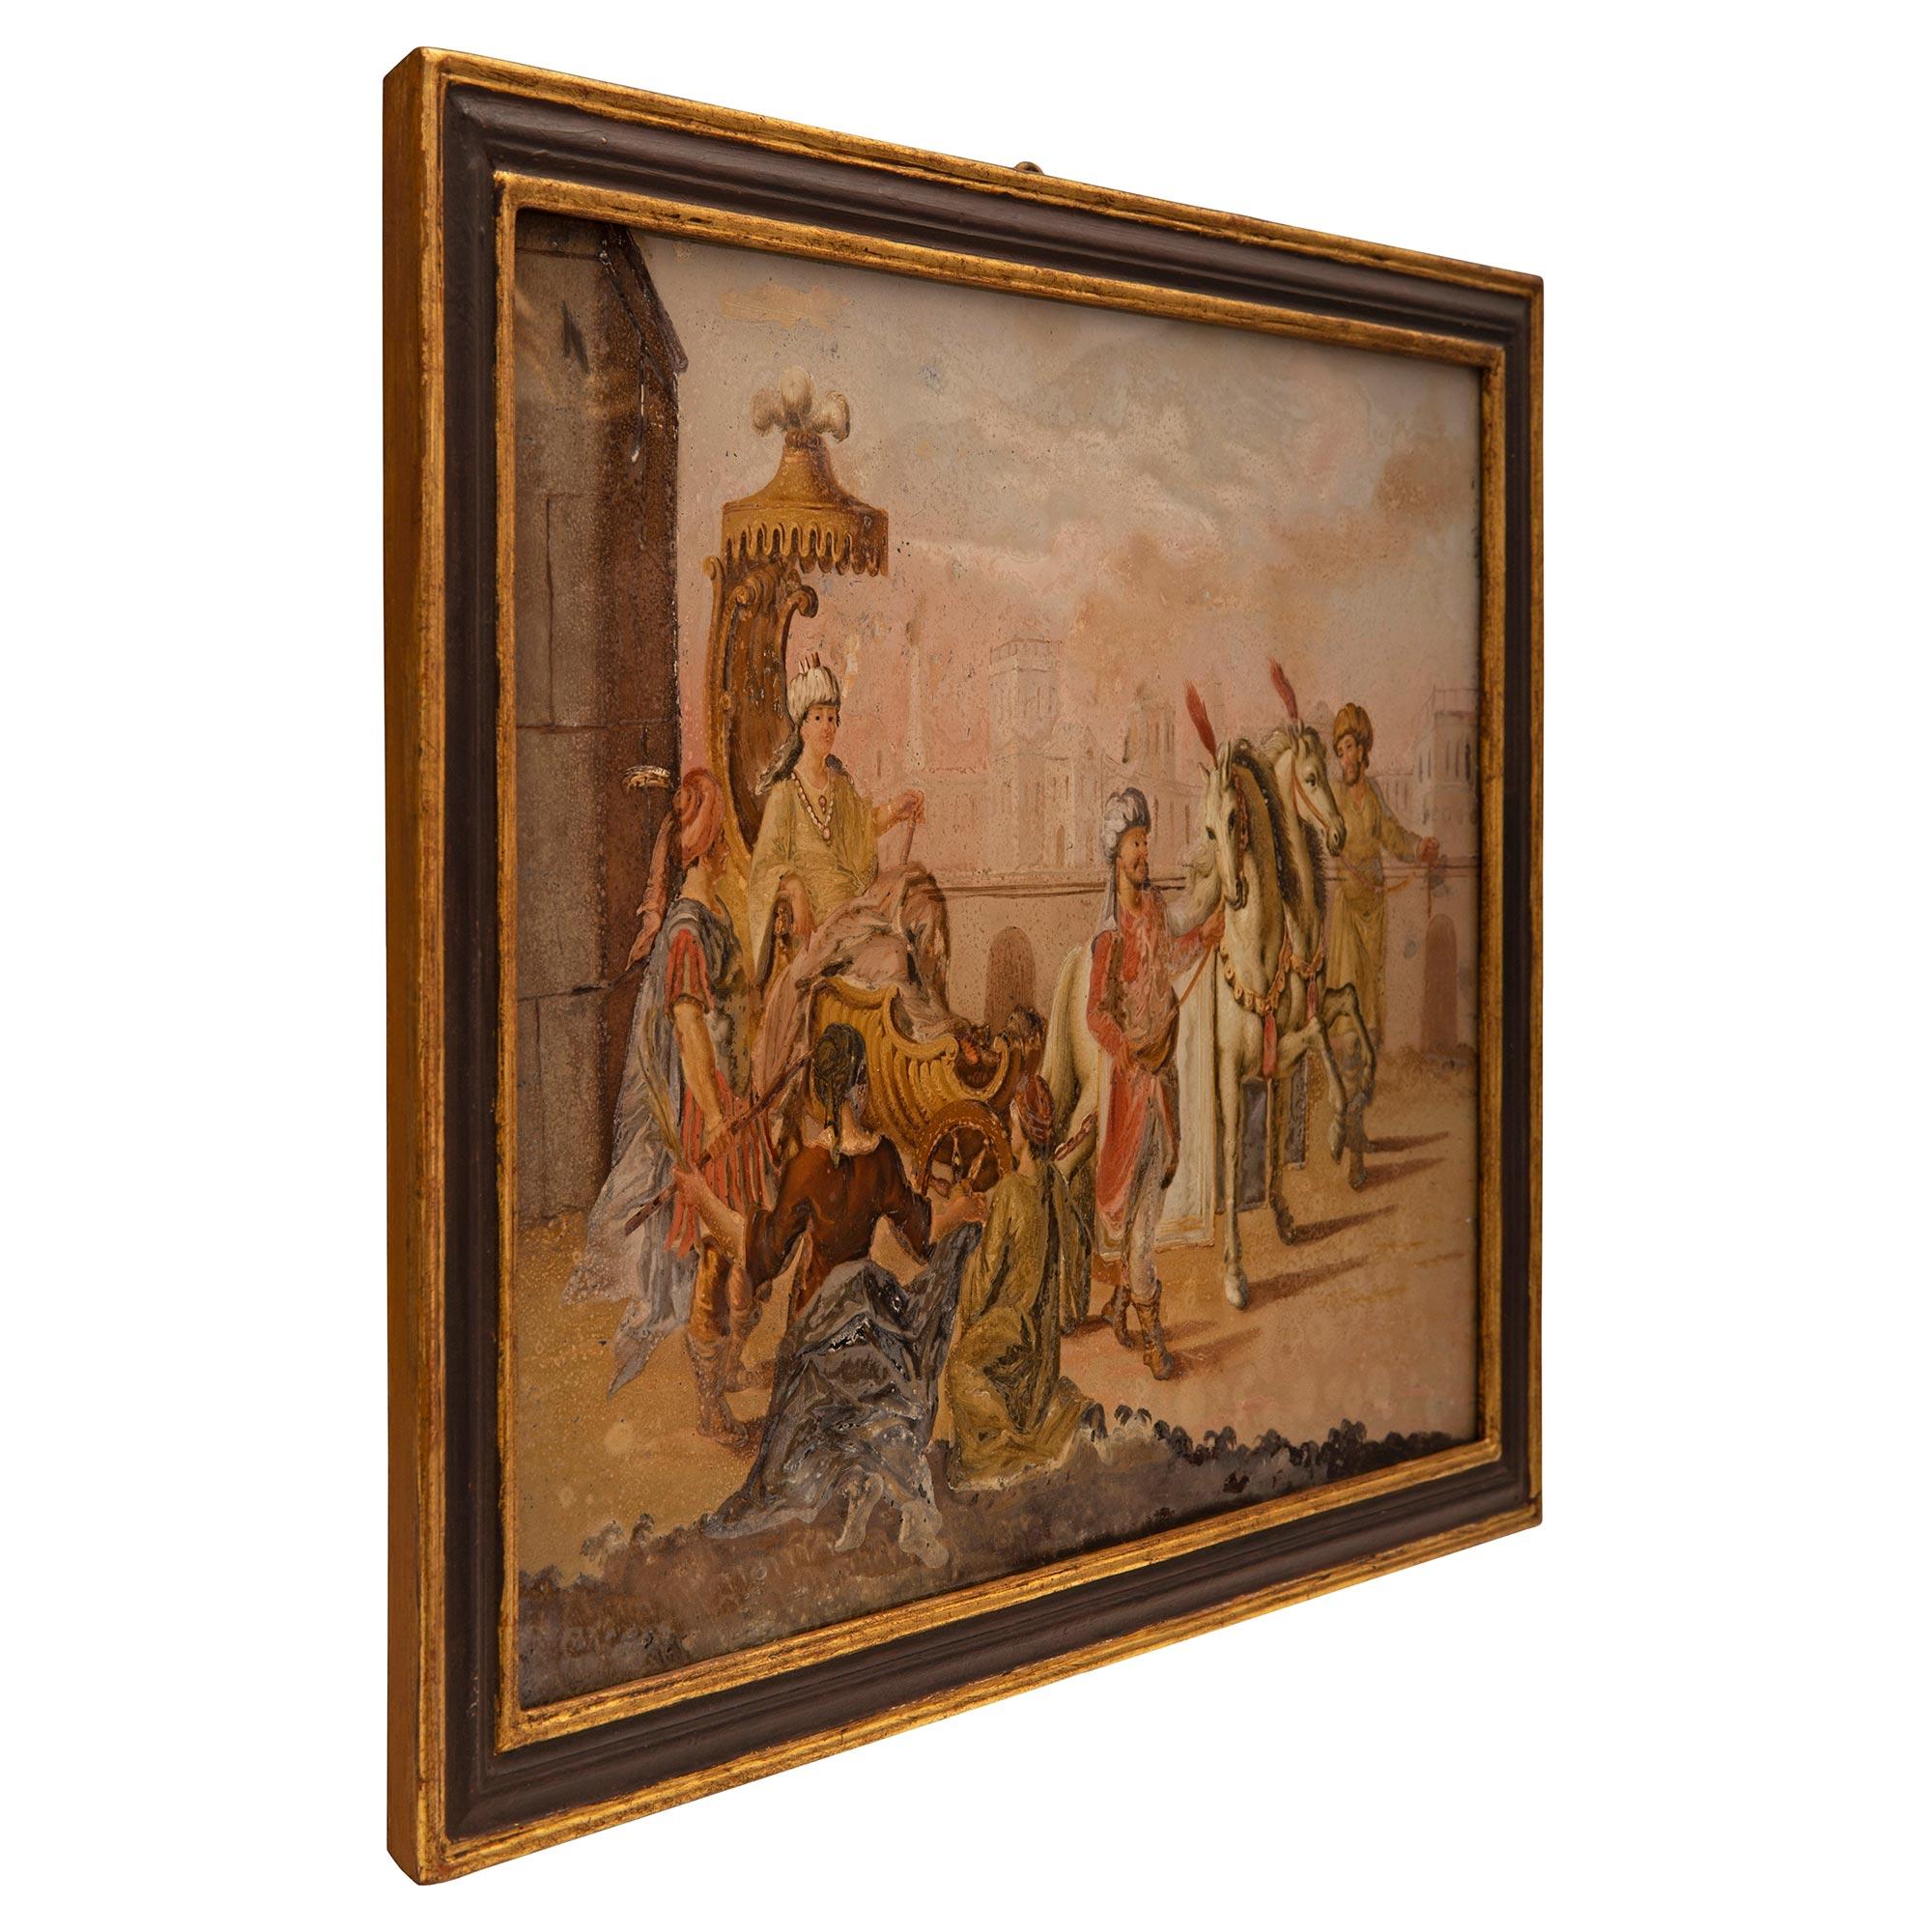 Superbe tableau italien du XVIIIe siècle peint à l'envers sur verre dans son cadre d'origine. Le tableau est placé dans son cadre d'origine, très élégant, en bois polychrome et doré, au motif finement marbré. La peinture représente une célébration